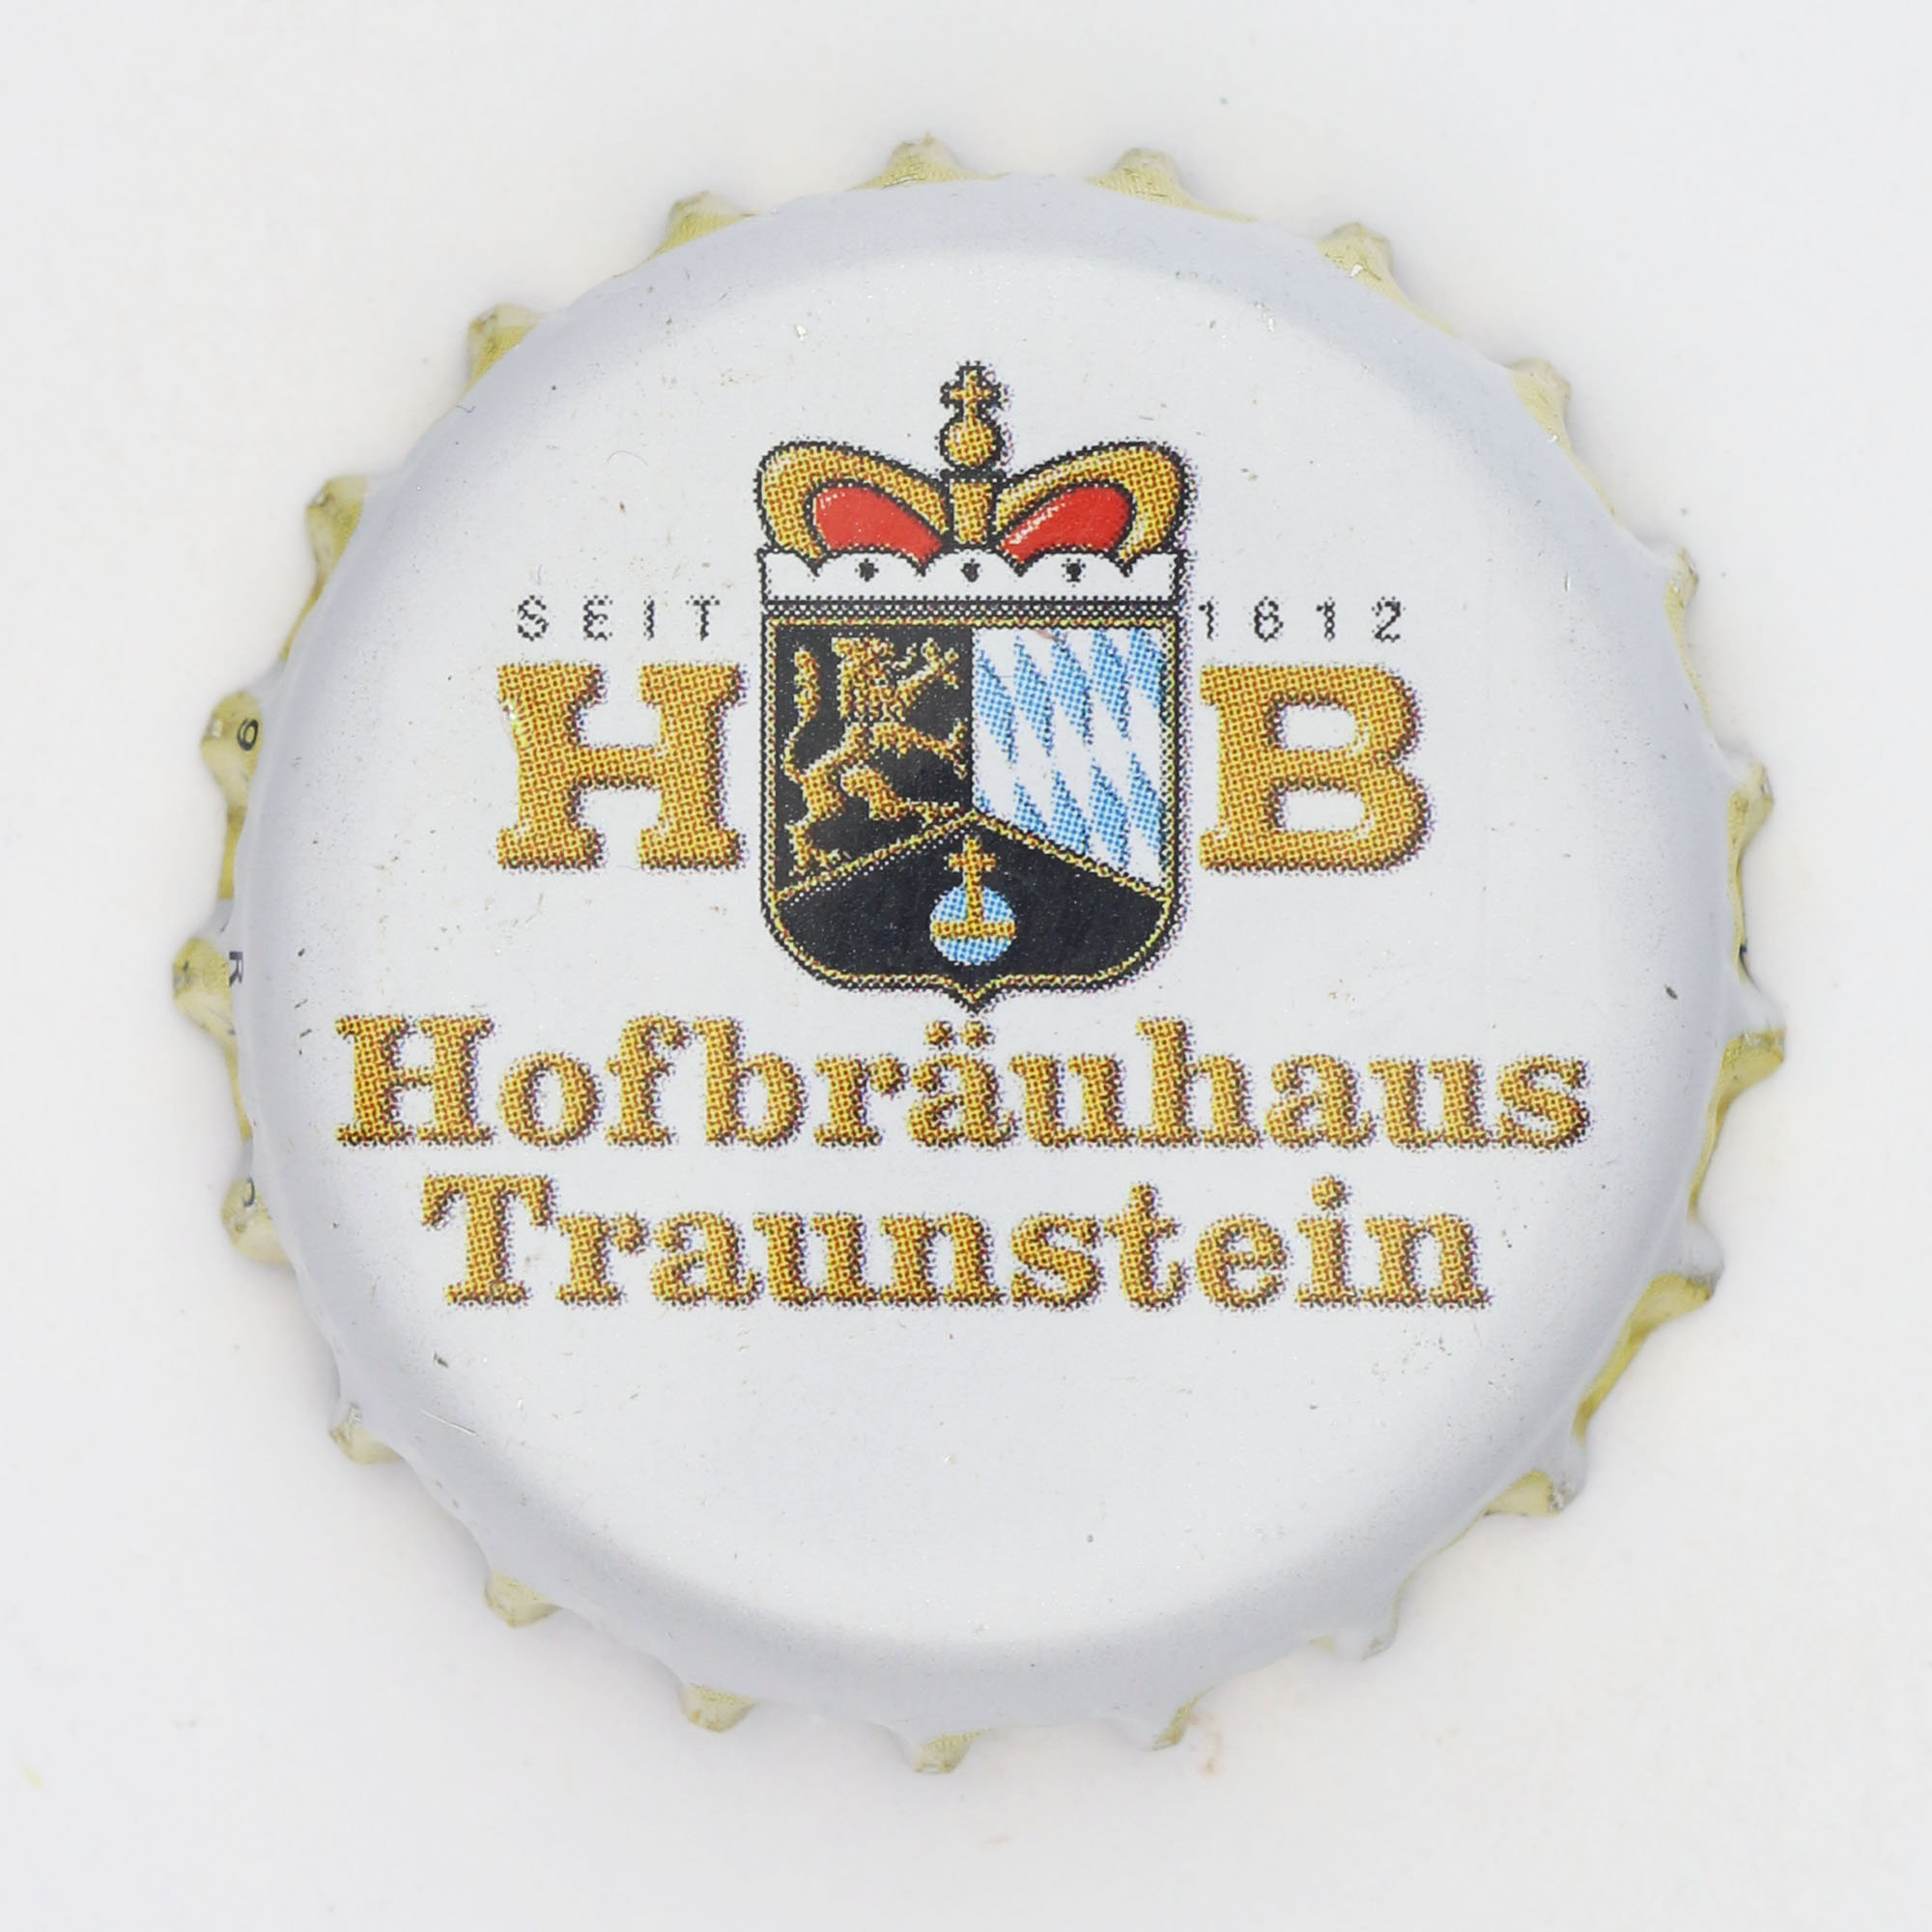 Hofbräuhaus Traunstein